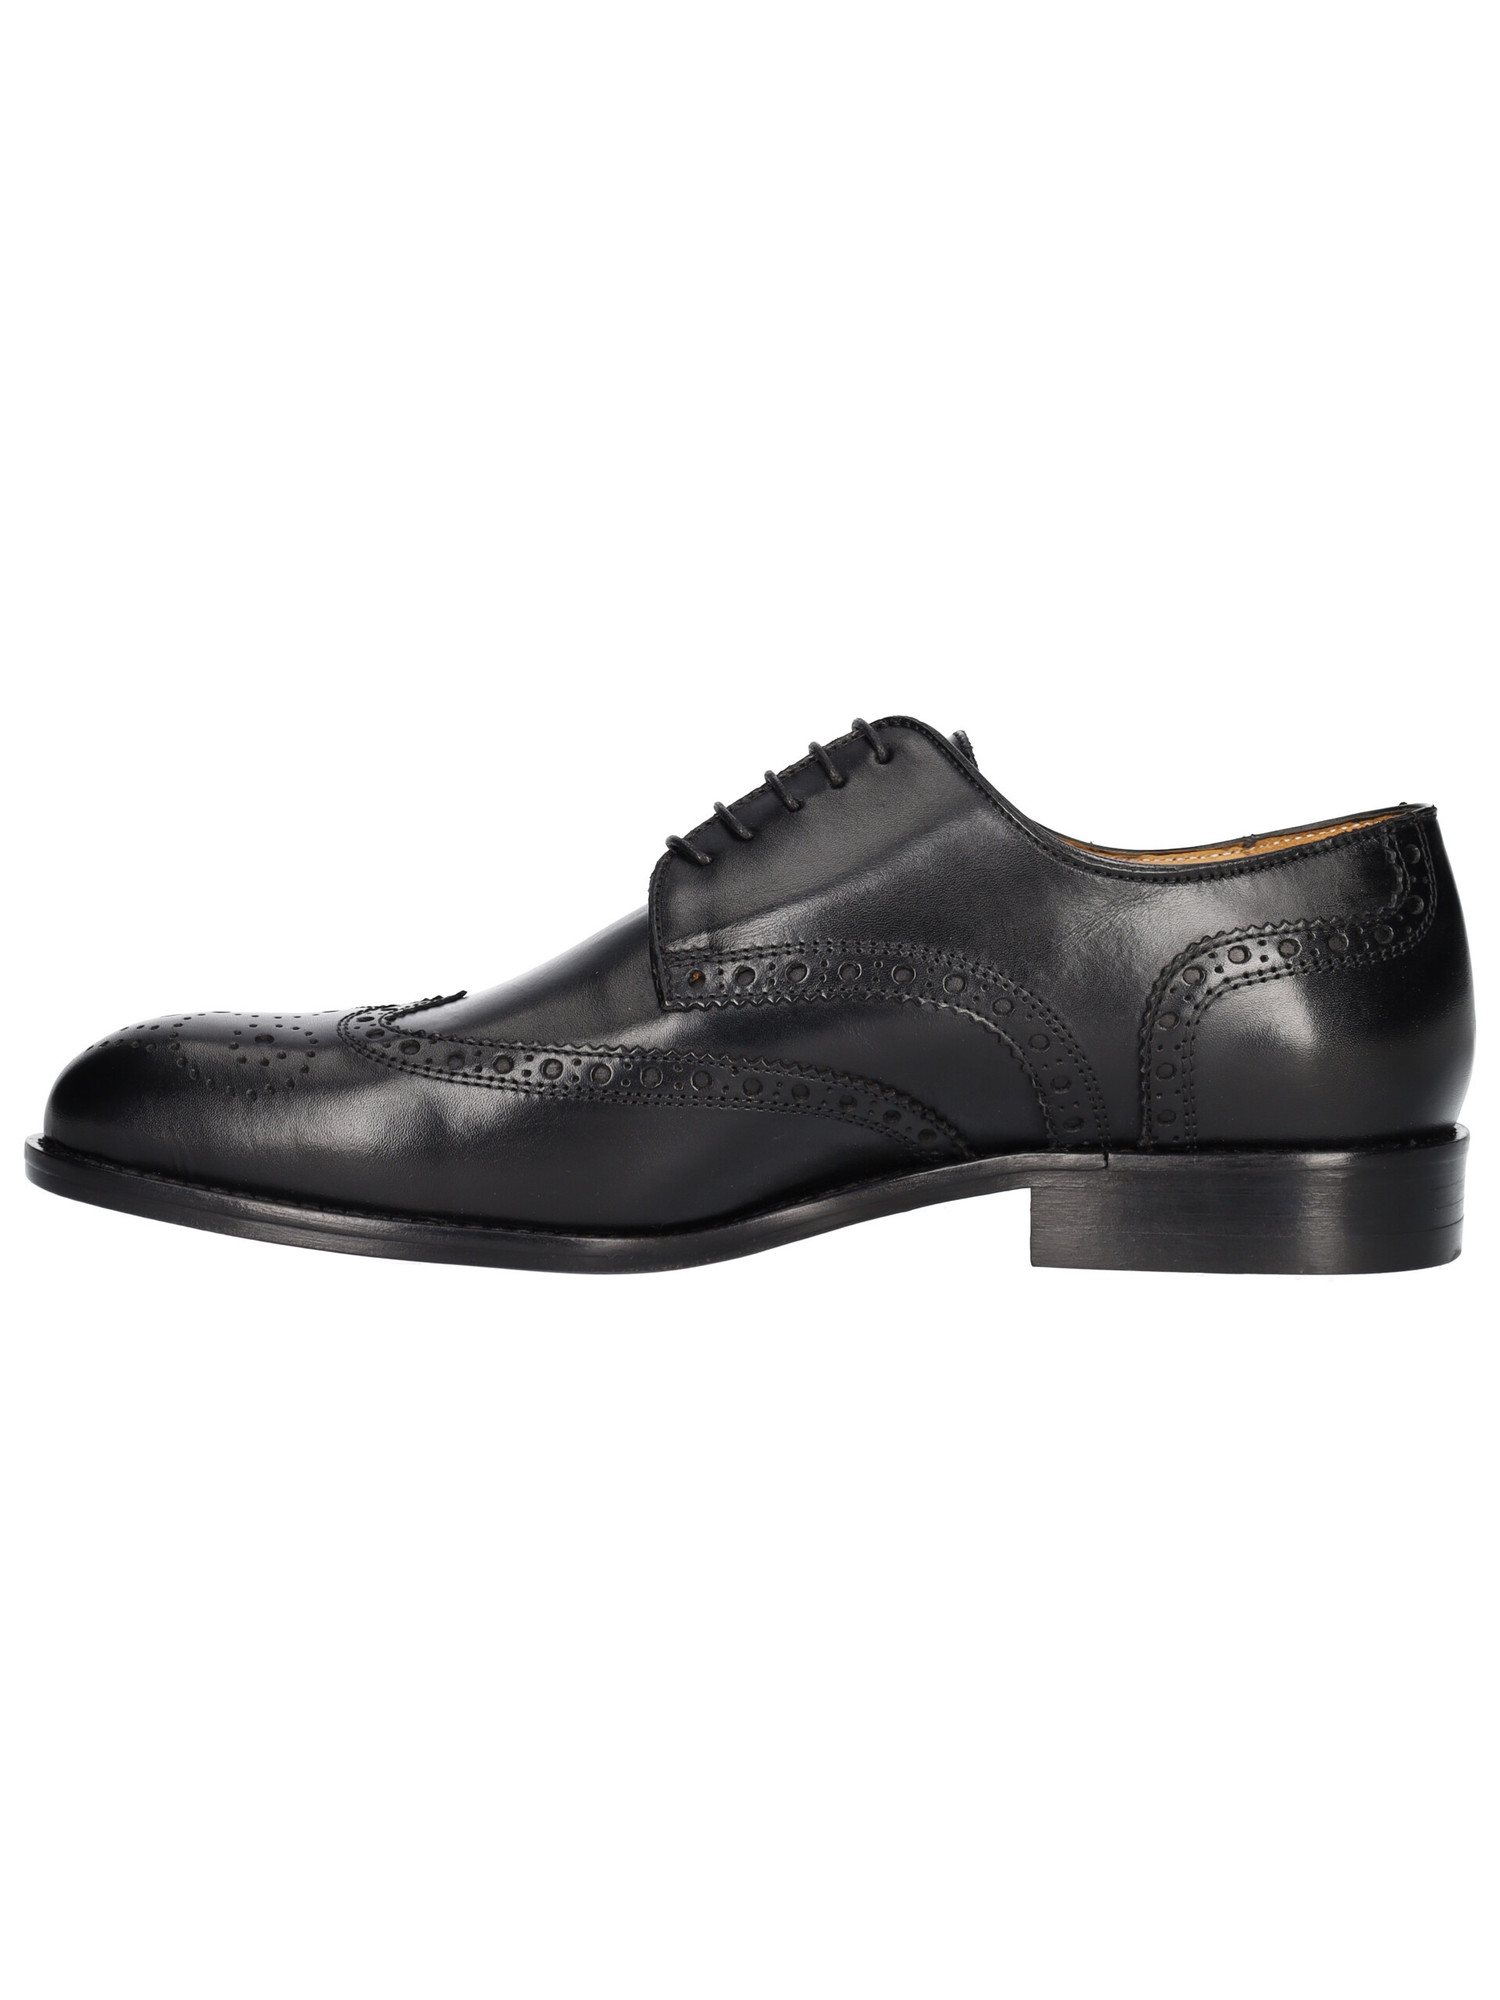 scarpa-elegante-mercanti-fiorentini-da-uomo-nera-281b1e